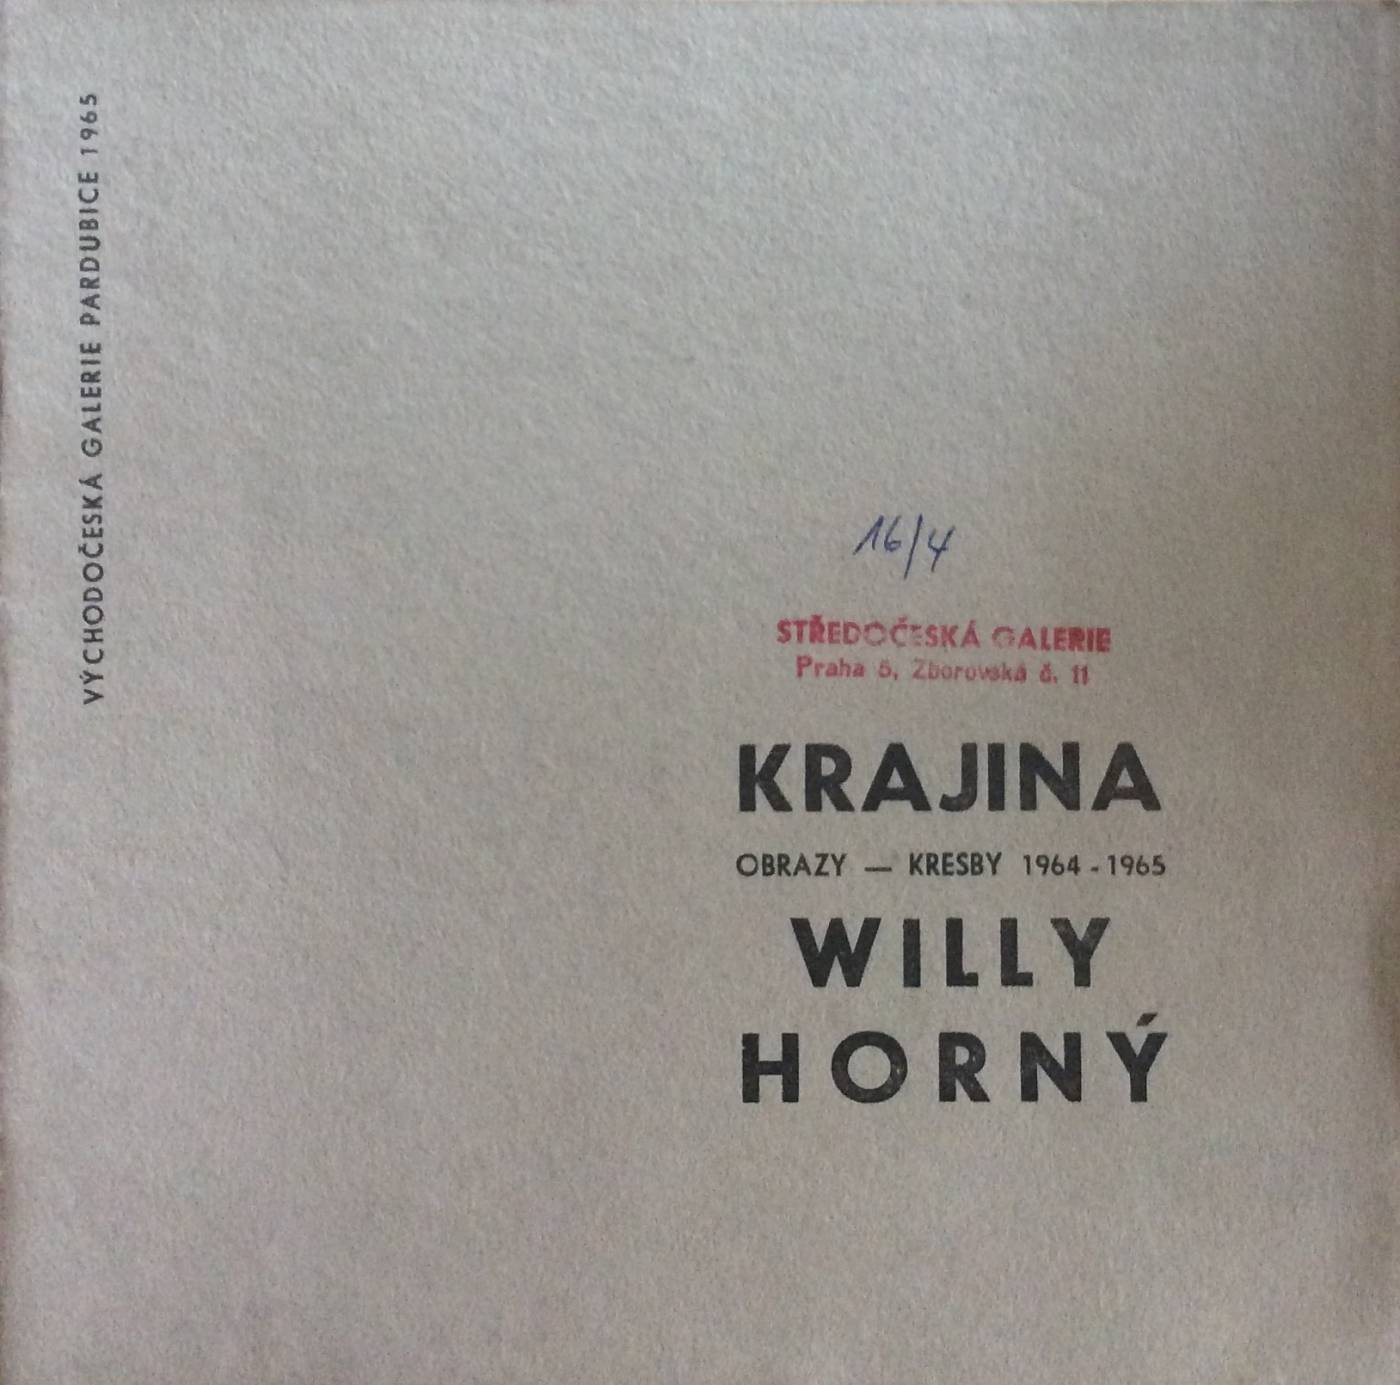 Willy Horný – Krajina (obrazy, kresby 1964 – 1965)